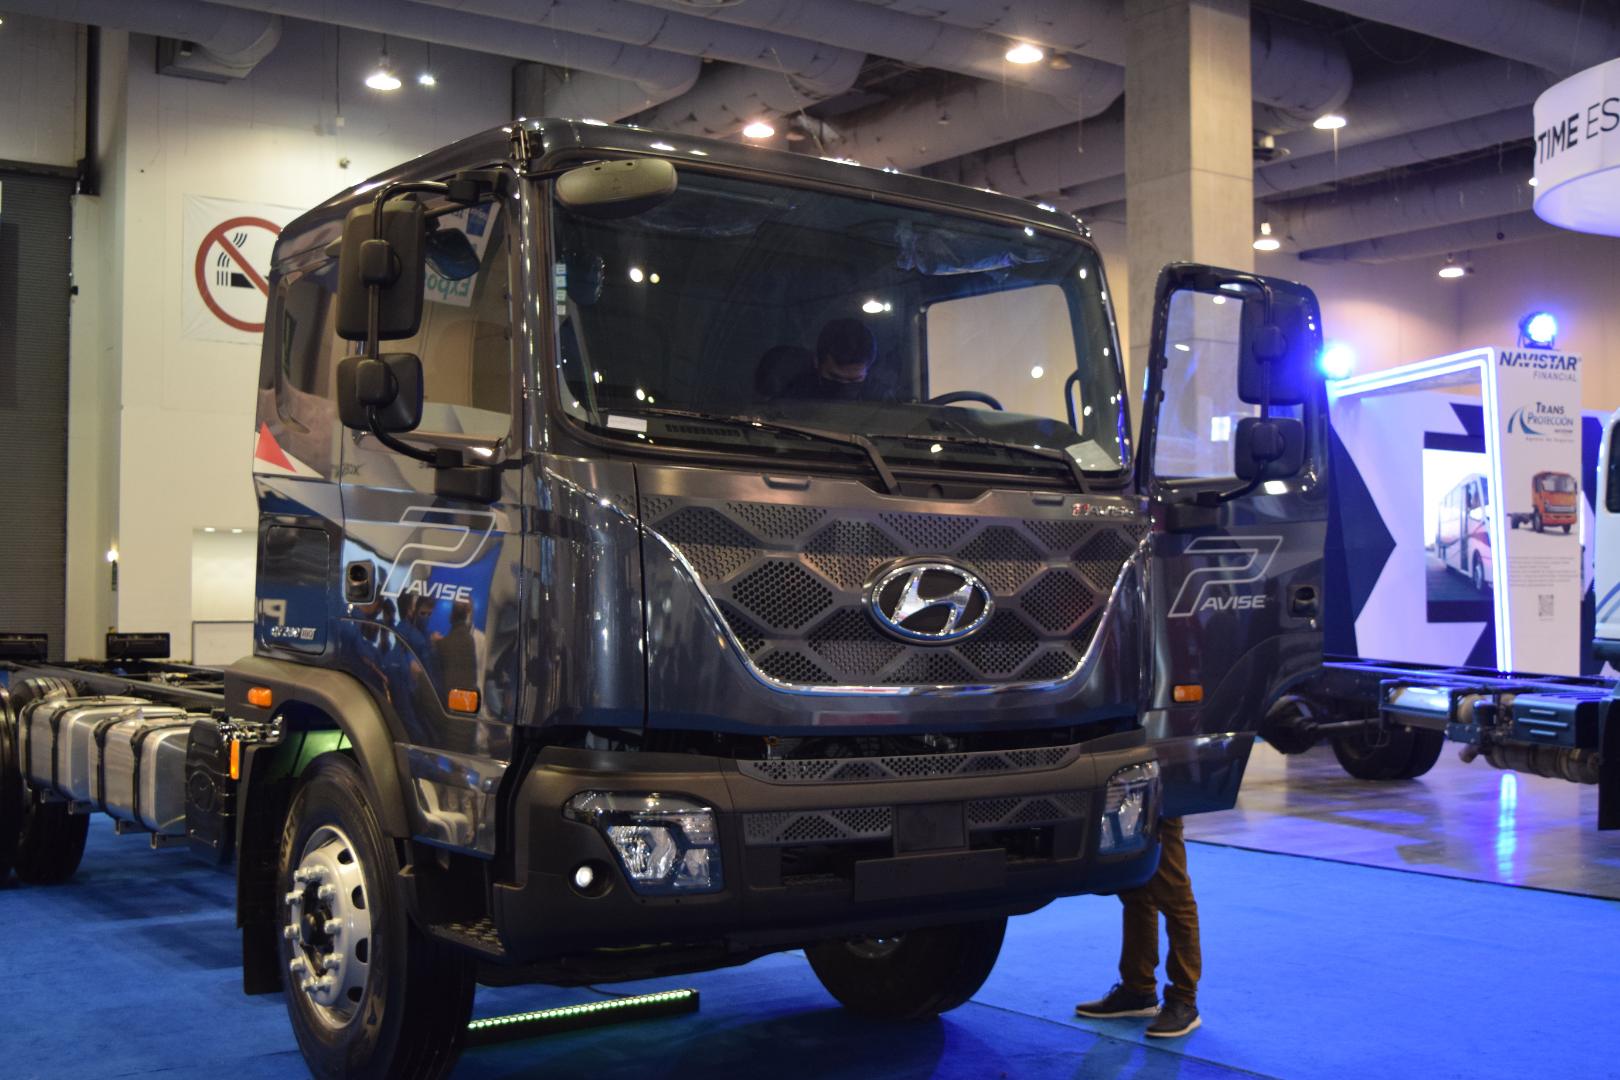 Hyundai Camiones y Buses